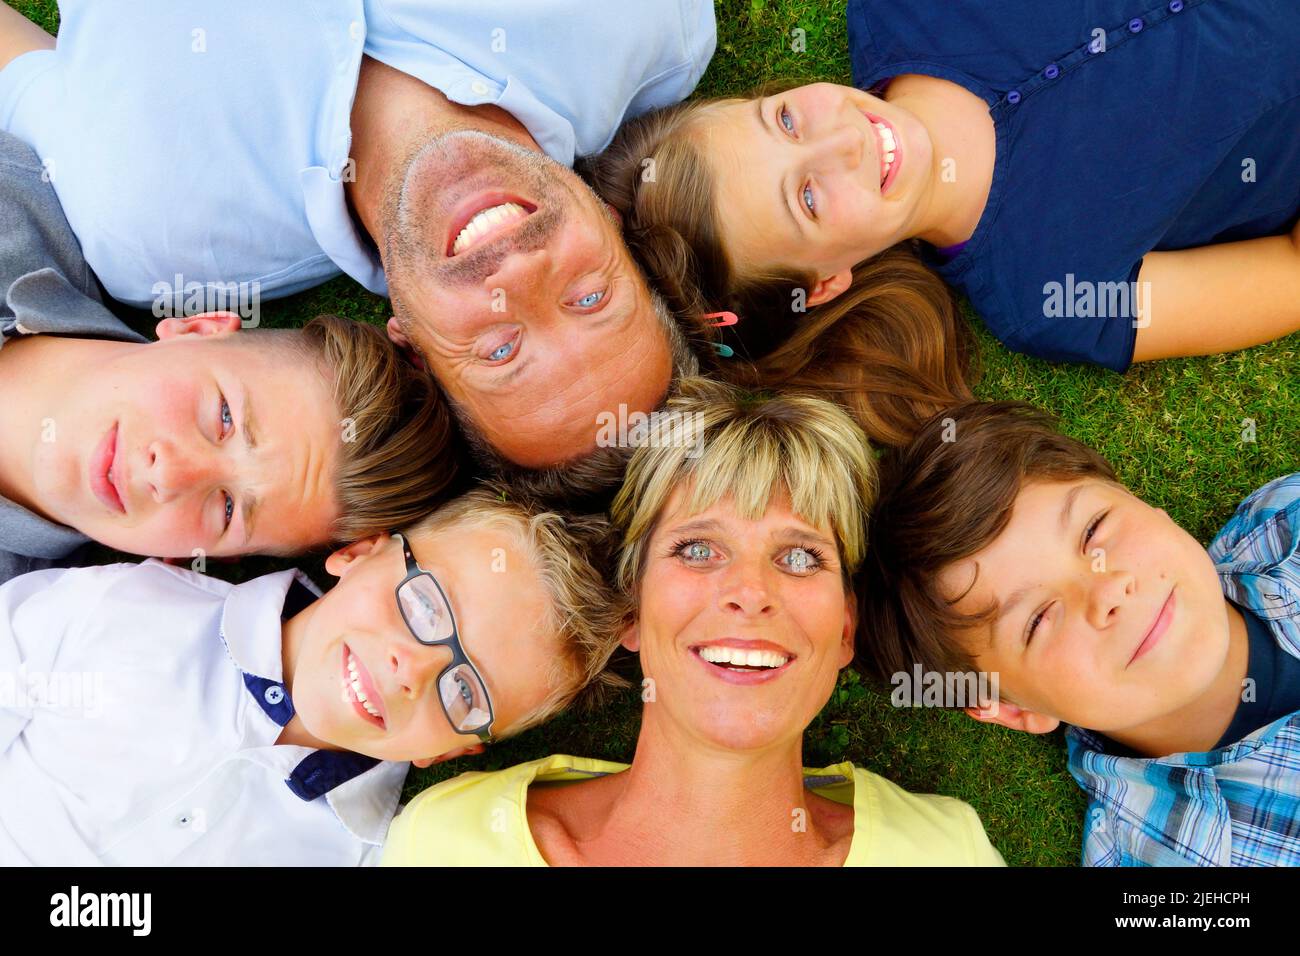 Familie liegt mit dem Rücken auf den Rasen und blickt in den Himmel, 6 Personen, Mann, Frau, Tochter, 3 Jungen, Foto Stock